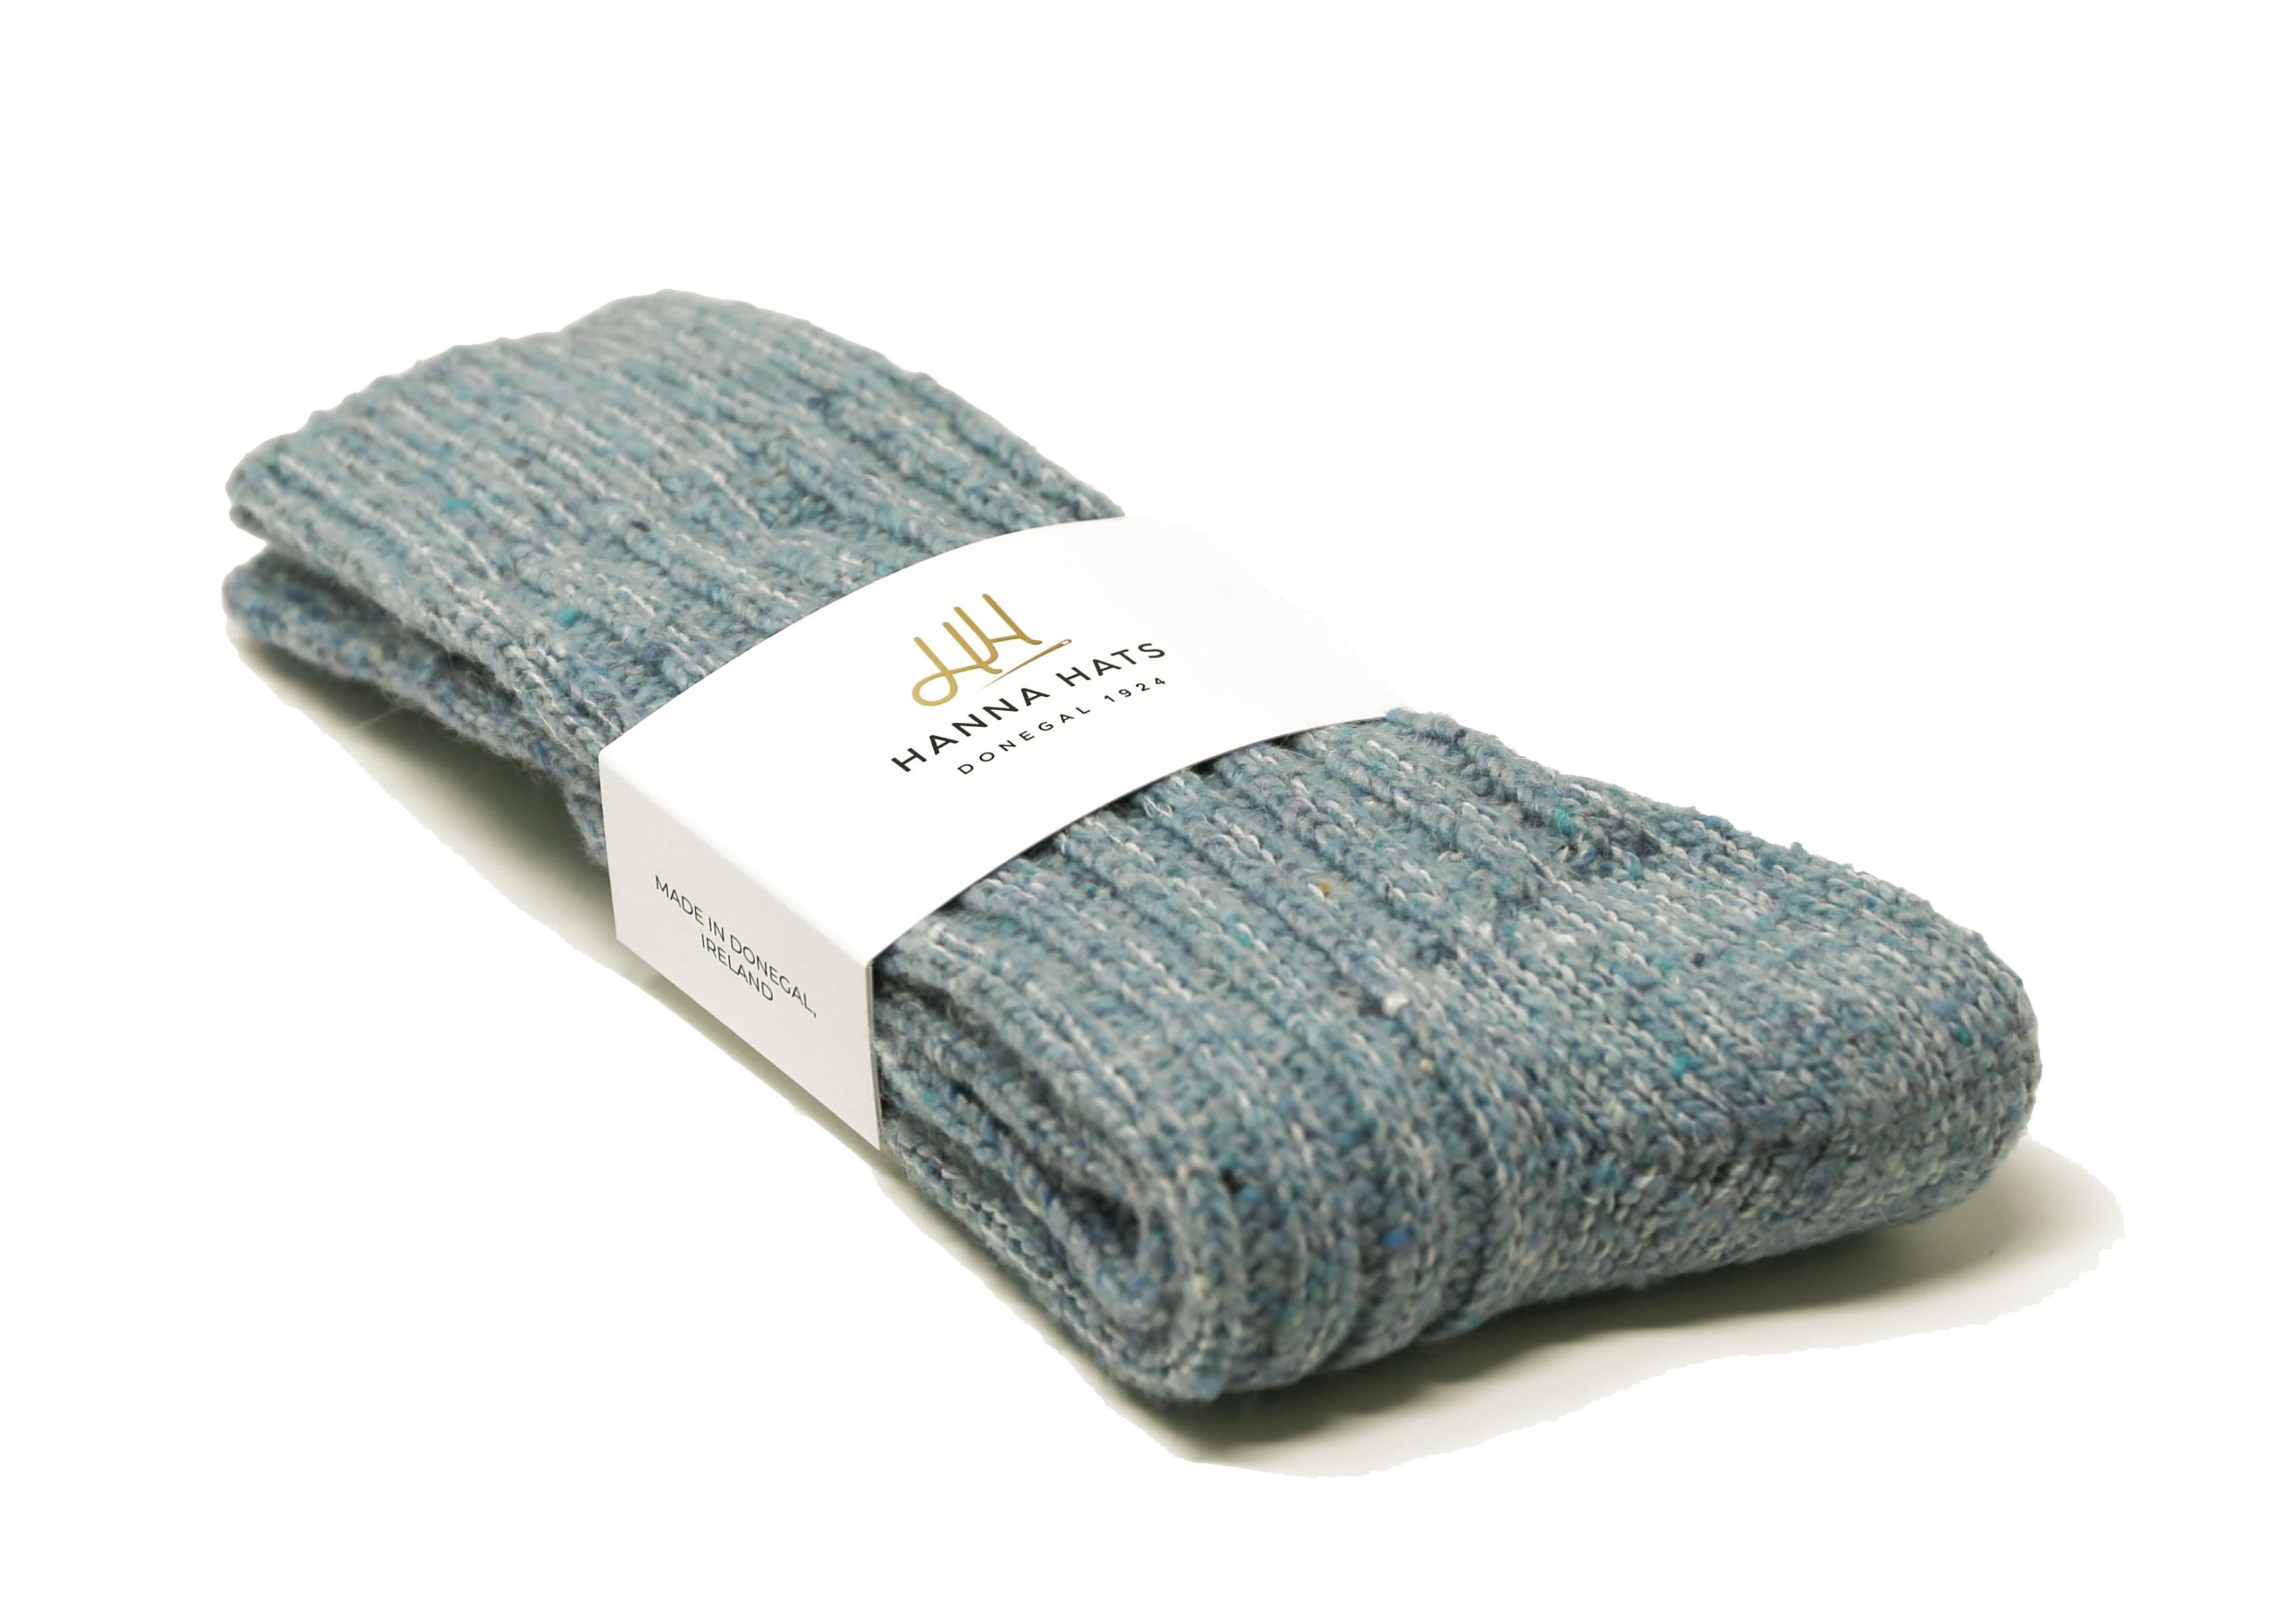 Donegal Socks Soft Blue Heavy Wool Socks Made in Ireland